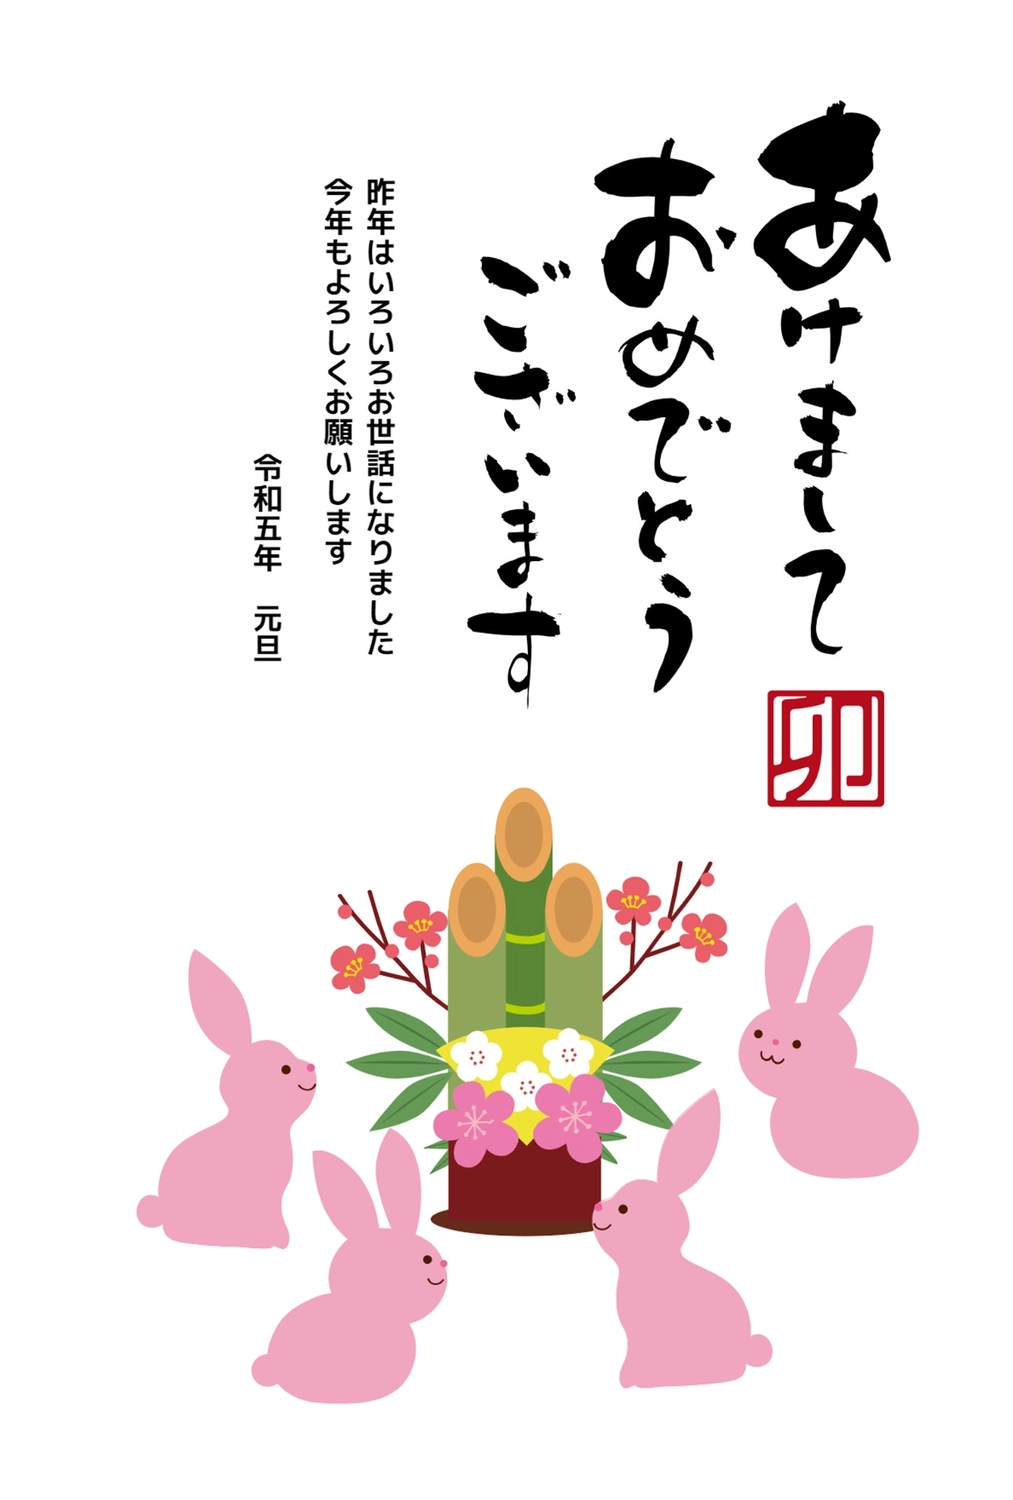 門松を囲むうさぎの年賀状, NEW YEAR, concord, rabbit, New Year Card template